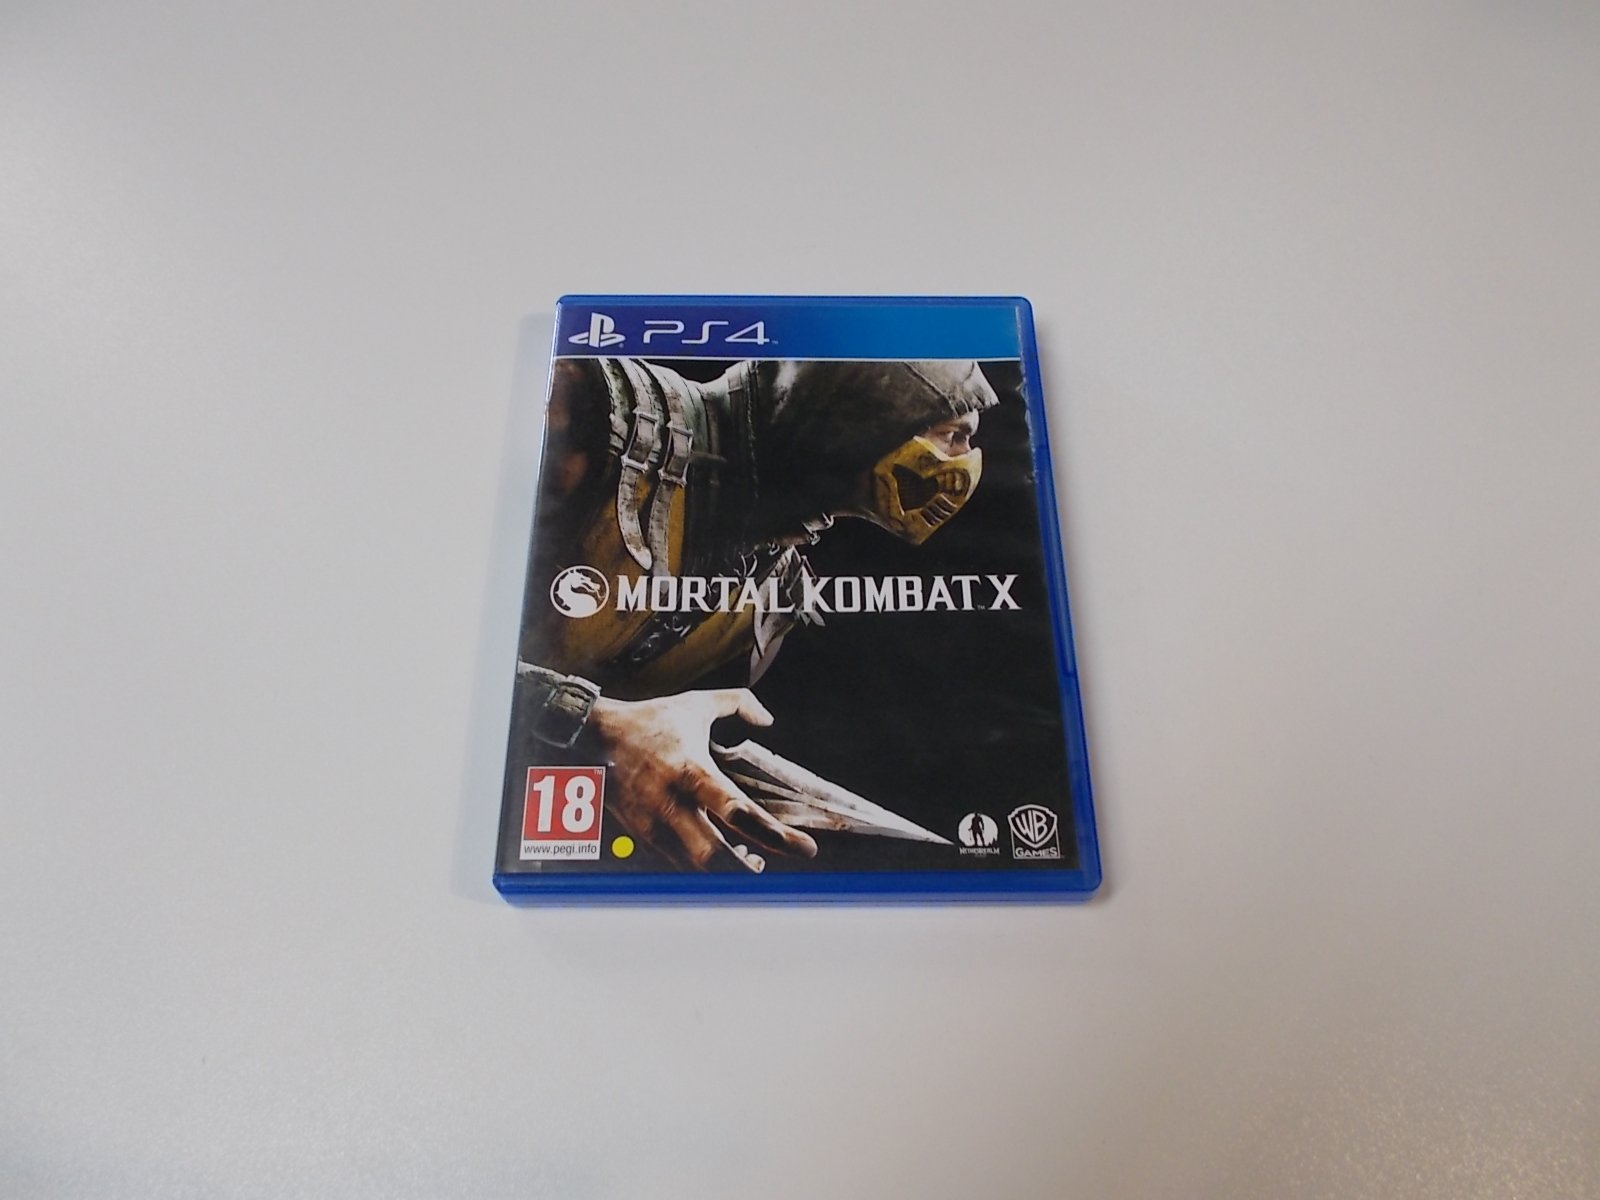 Mortal kombat X - GRA Ps4 - Opole 0546